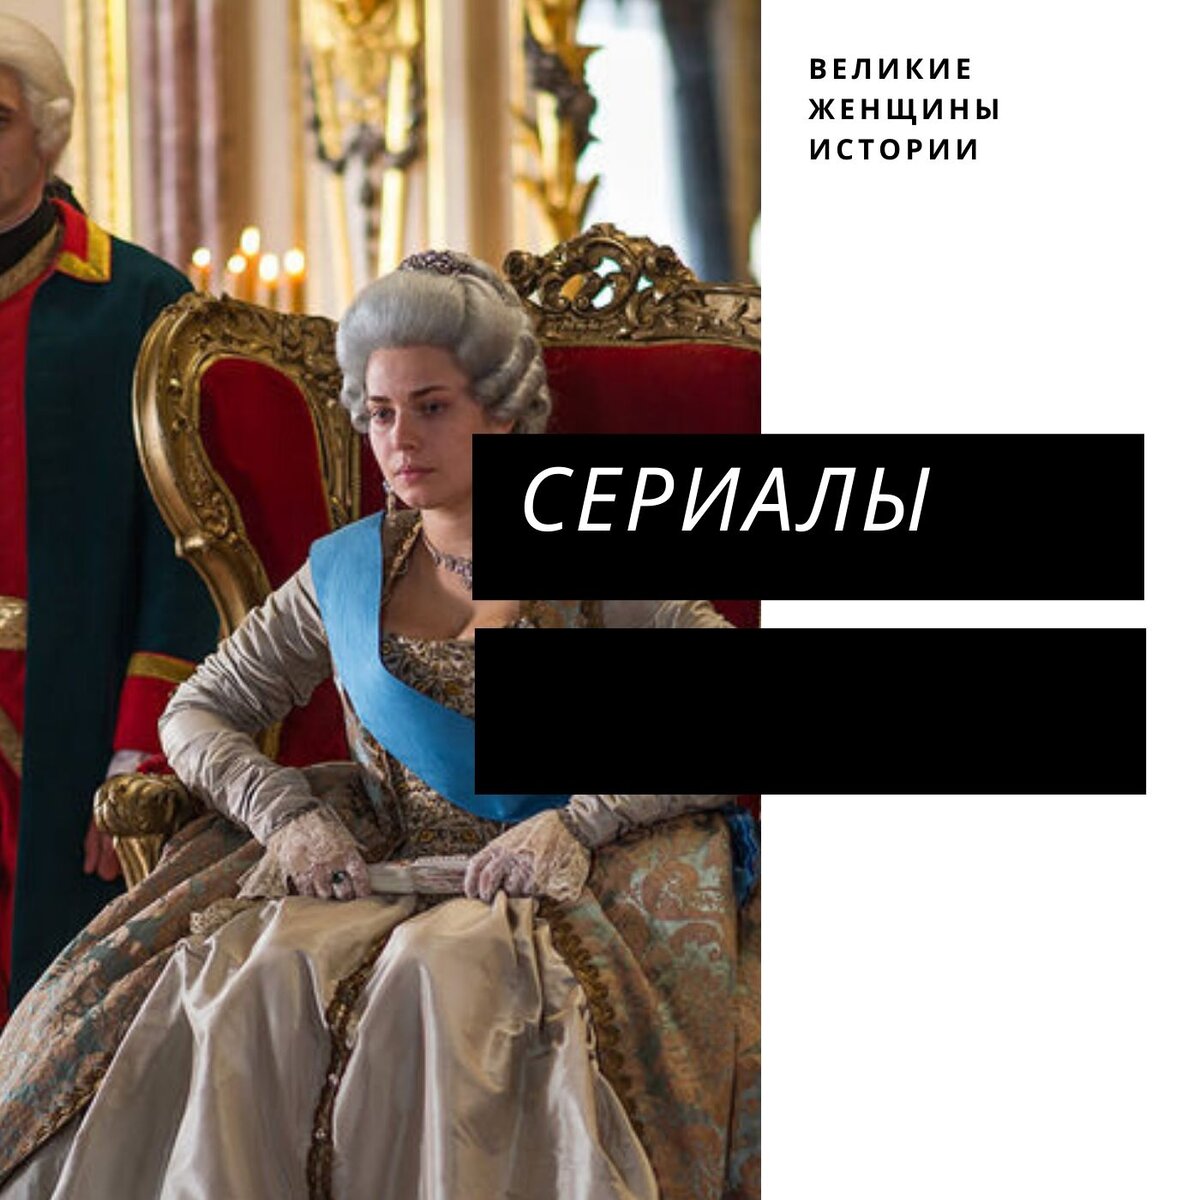 Екатерина Великая, обнаженная правда - порно фильм на русском языке